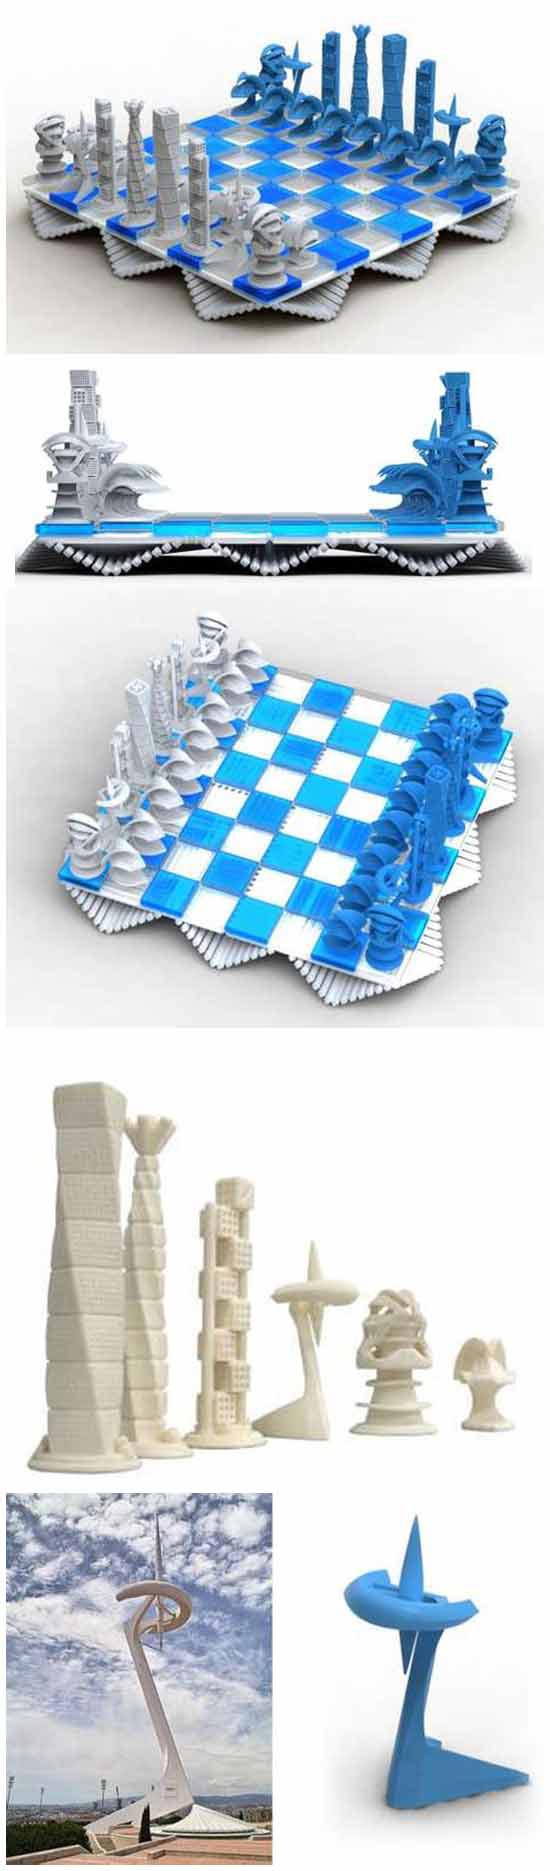 Архітектурні шахи